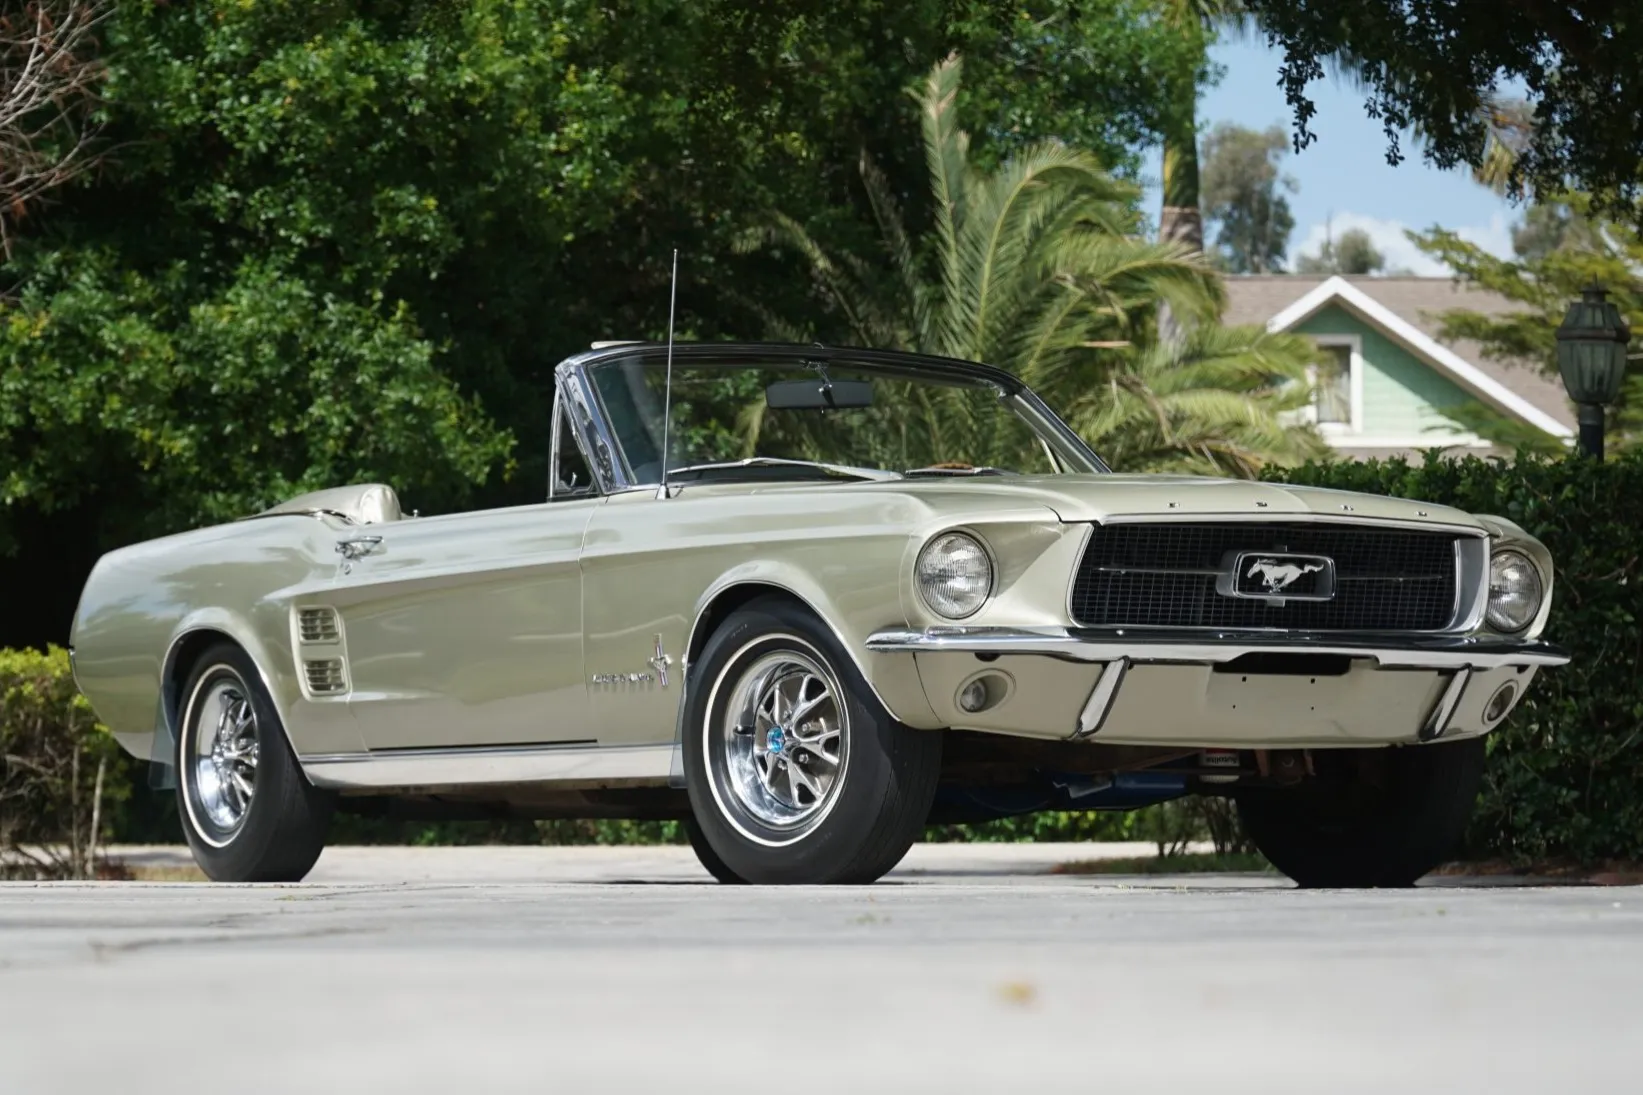 1967 Ford S Código 390 Mustang conversível Dsc08642 2 72319.jpg